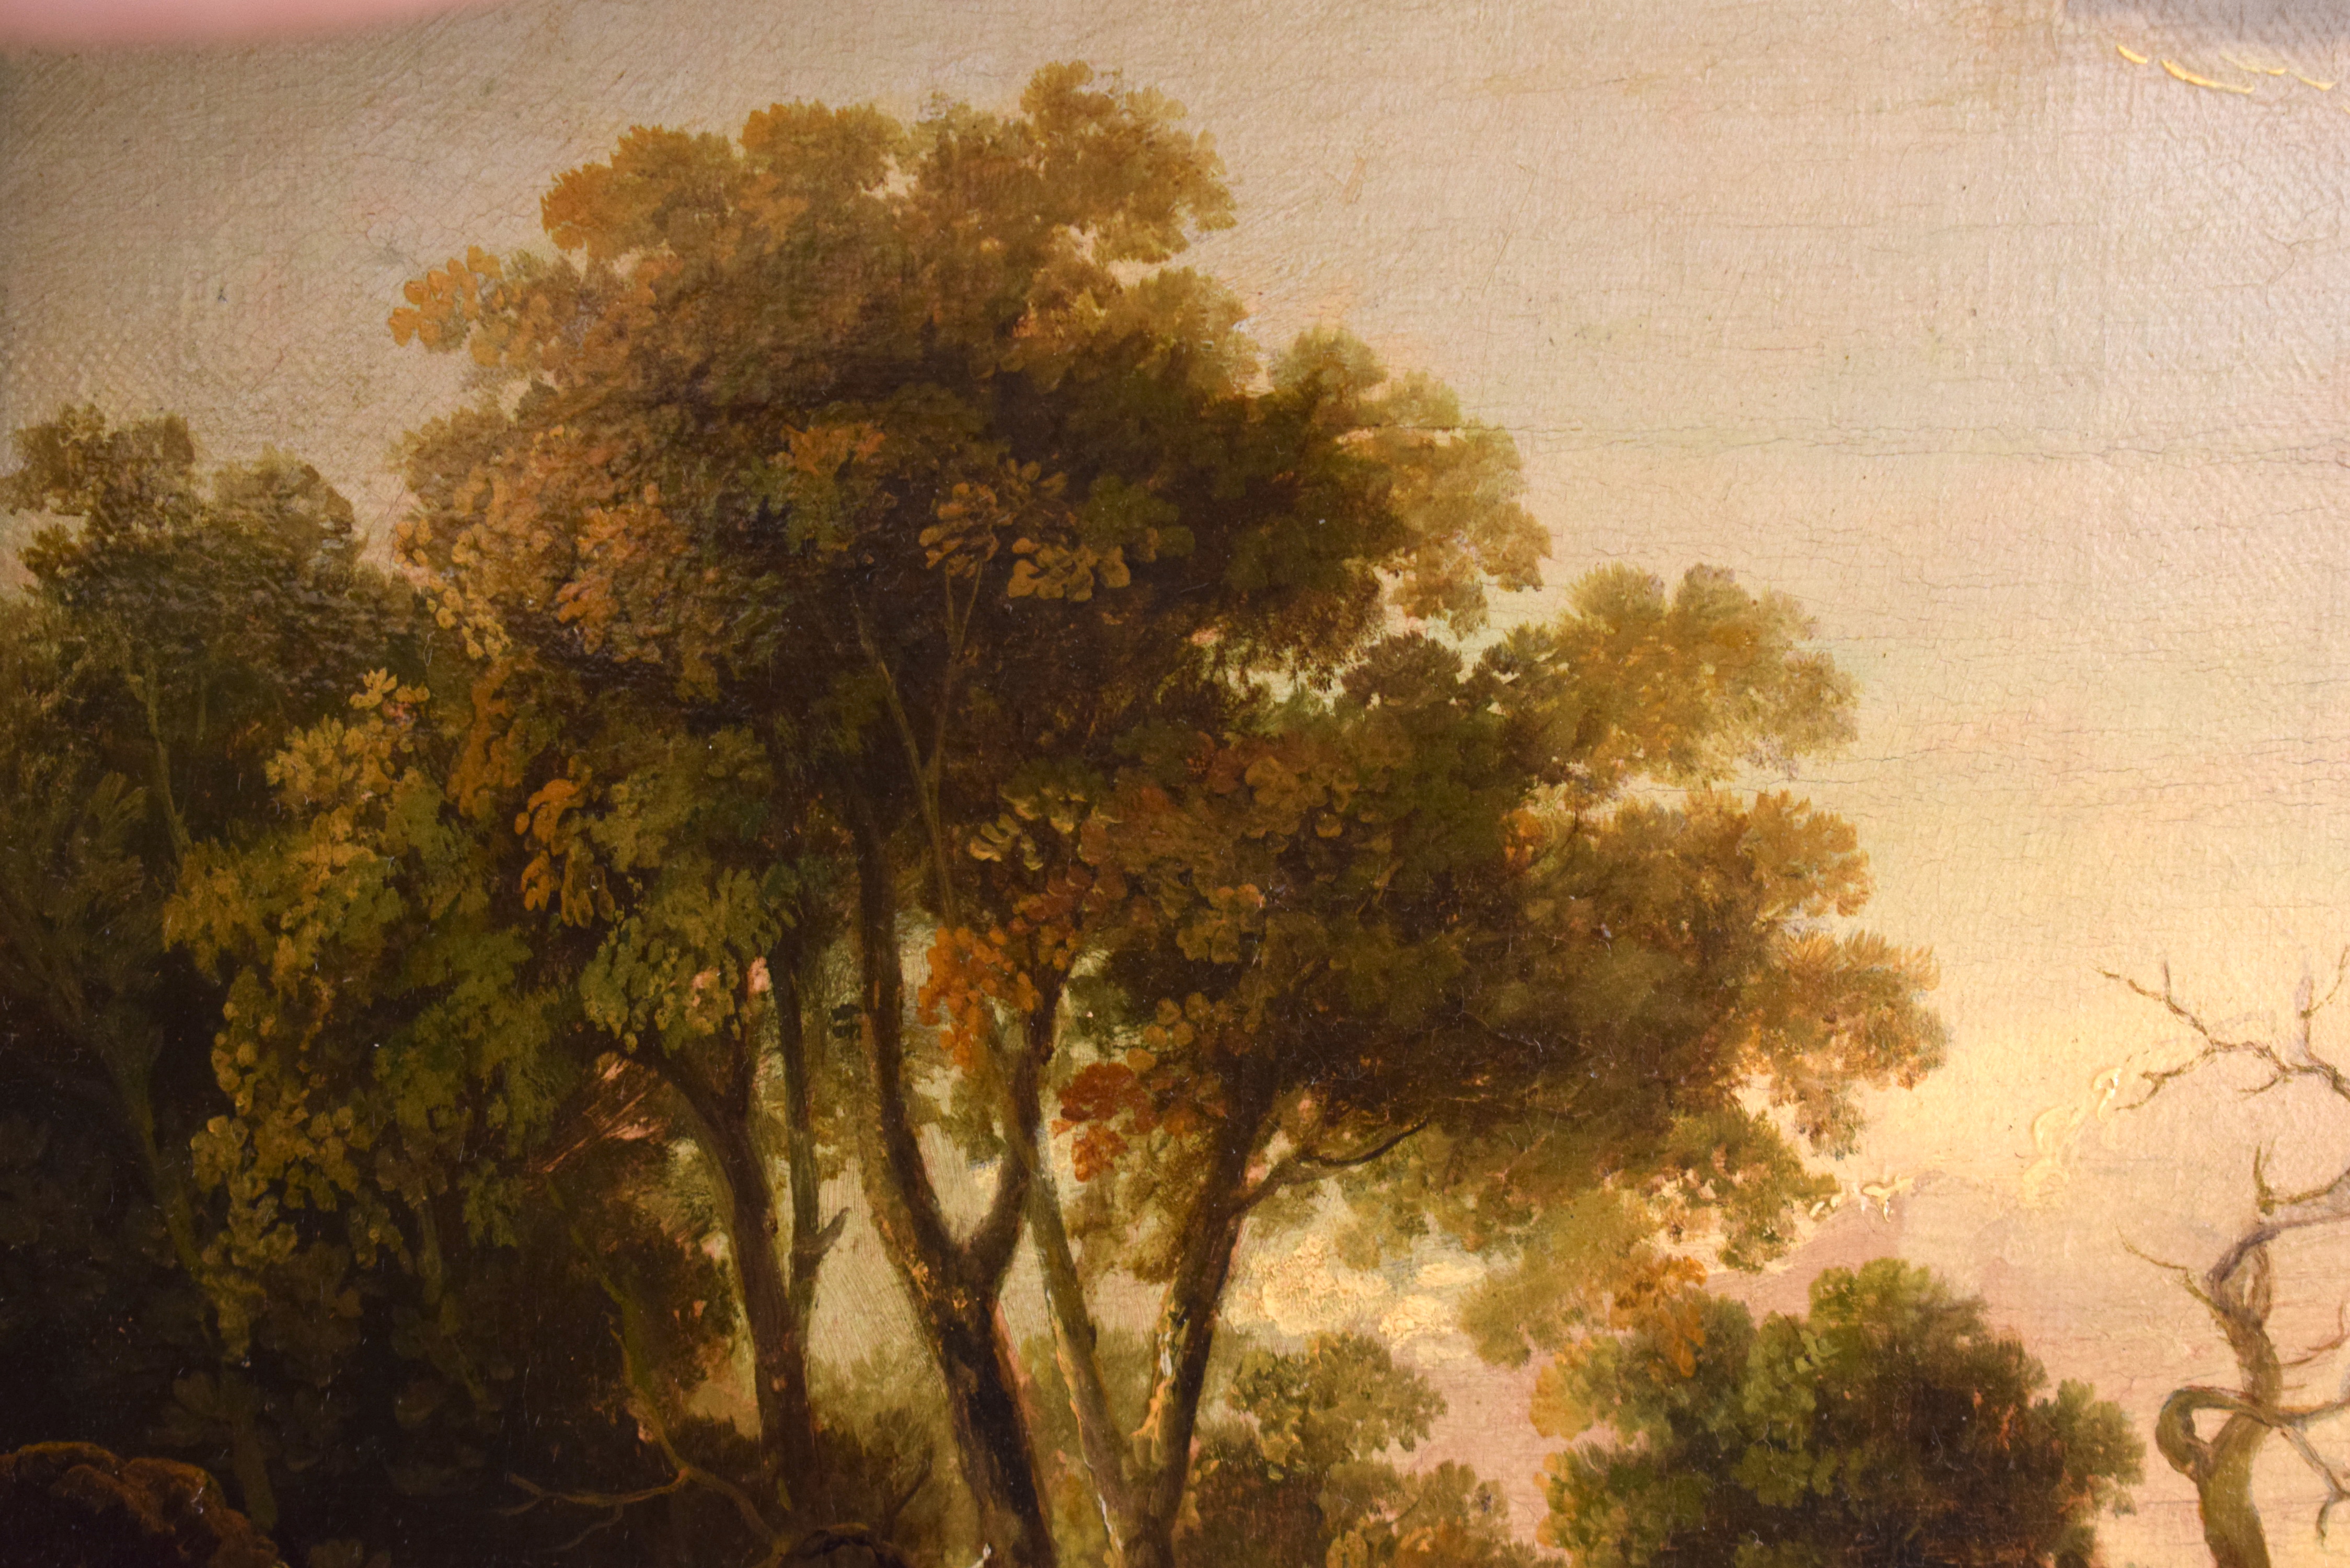 Alexander Nasmyth (1758-1840) Oil on board, Figures roaming within a landscape. Image 32 cm x 20 cm - Image 5 of 6